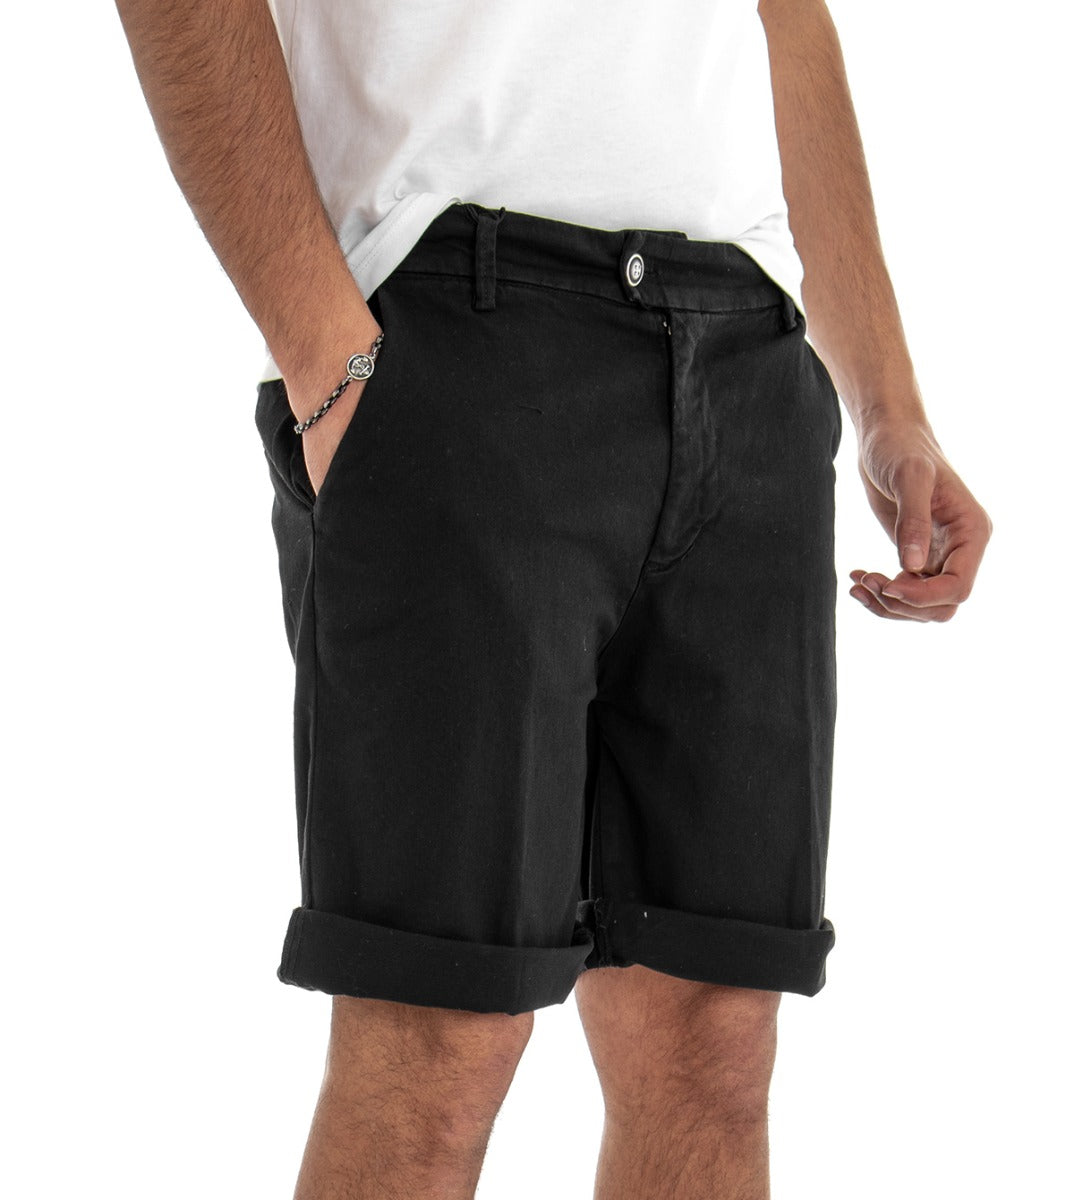 Bermuda Pantaloncino Uomo Corto Cotone Tasca America Nero GIOSAL-PC1378A